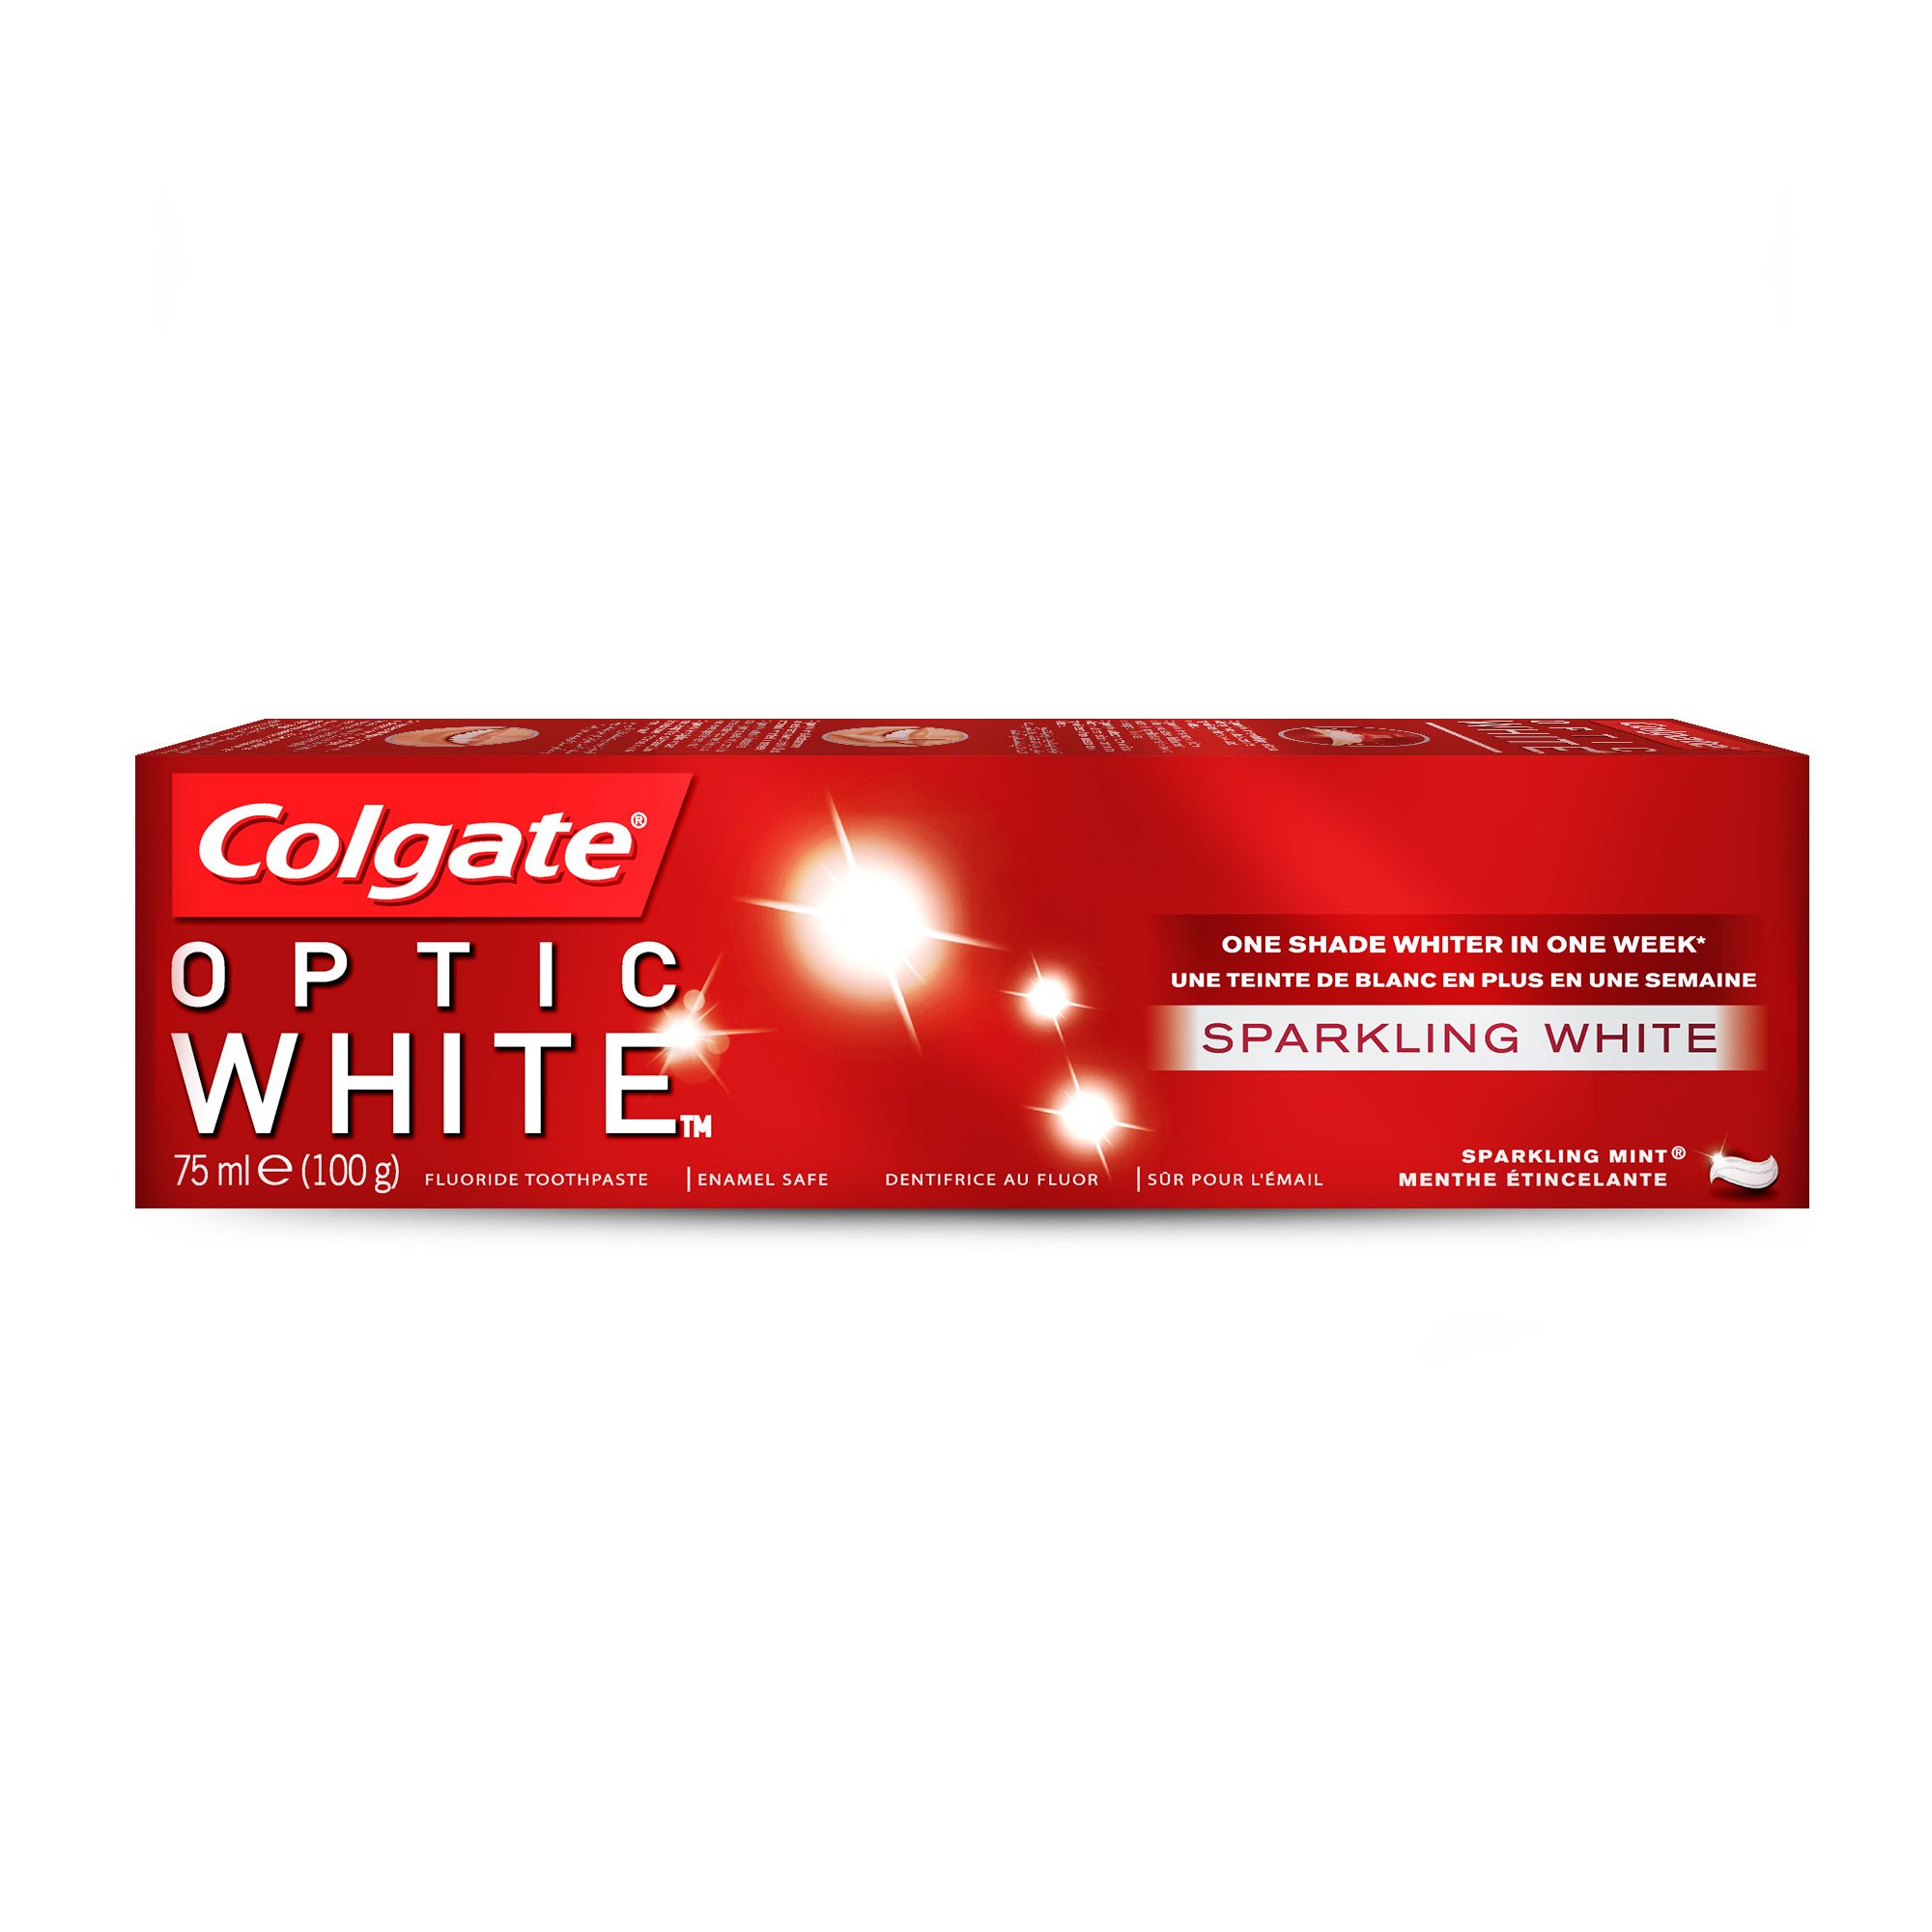 Colgate Optic White Sparkling White Teeth Whitening Toothpaste-75 ml